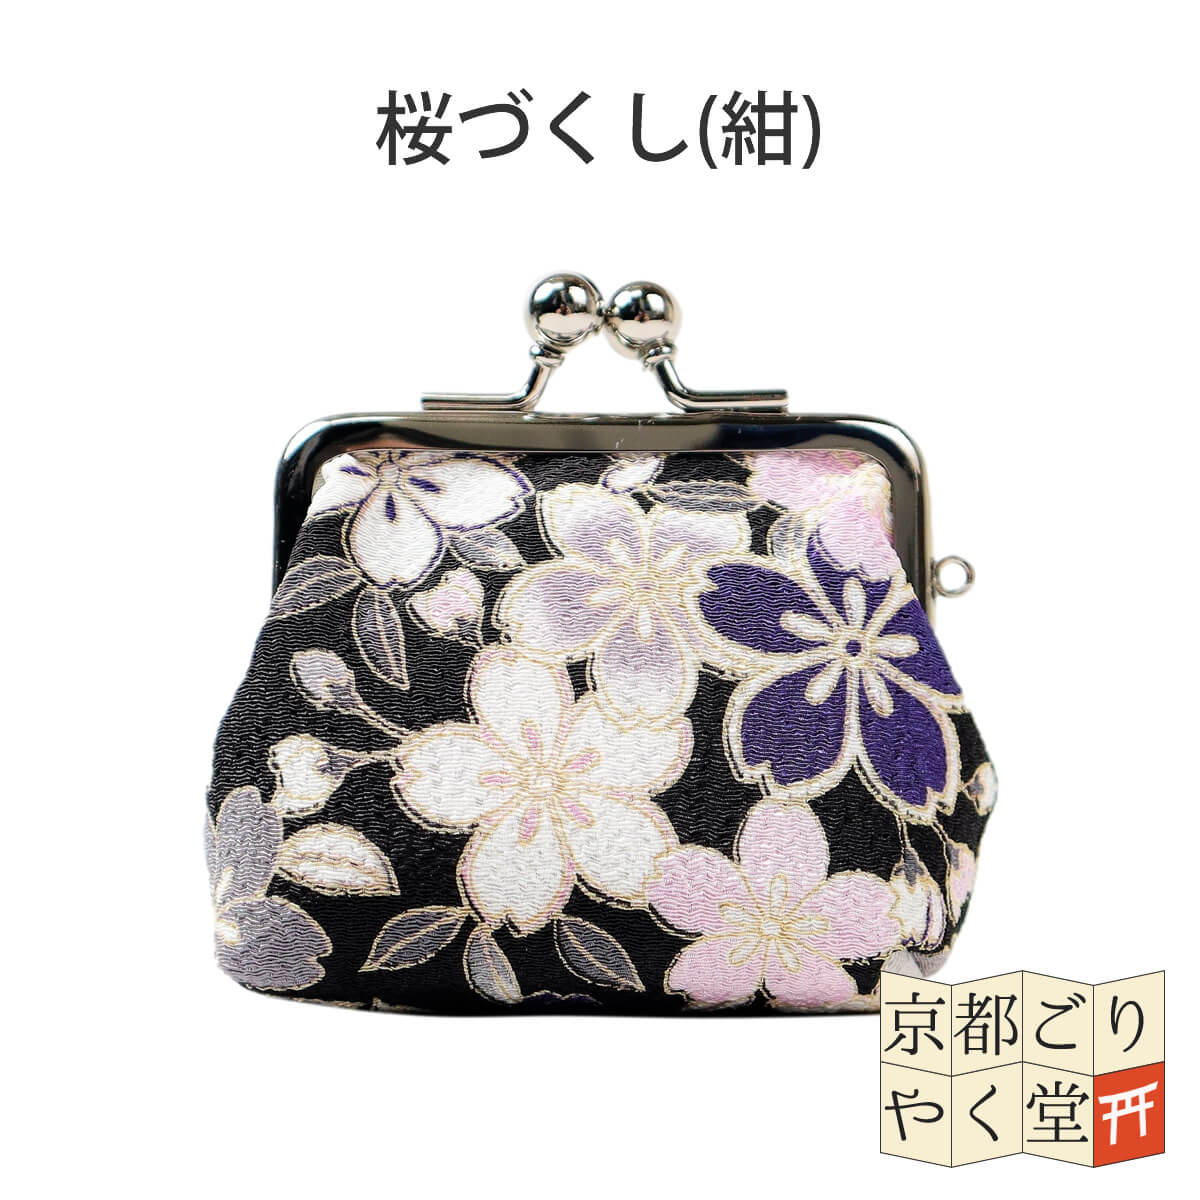 がま口財布 2.6寸 小銭入れ かわいい 和風 和柄 花柄 桜 さくら 梅